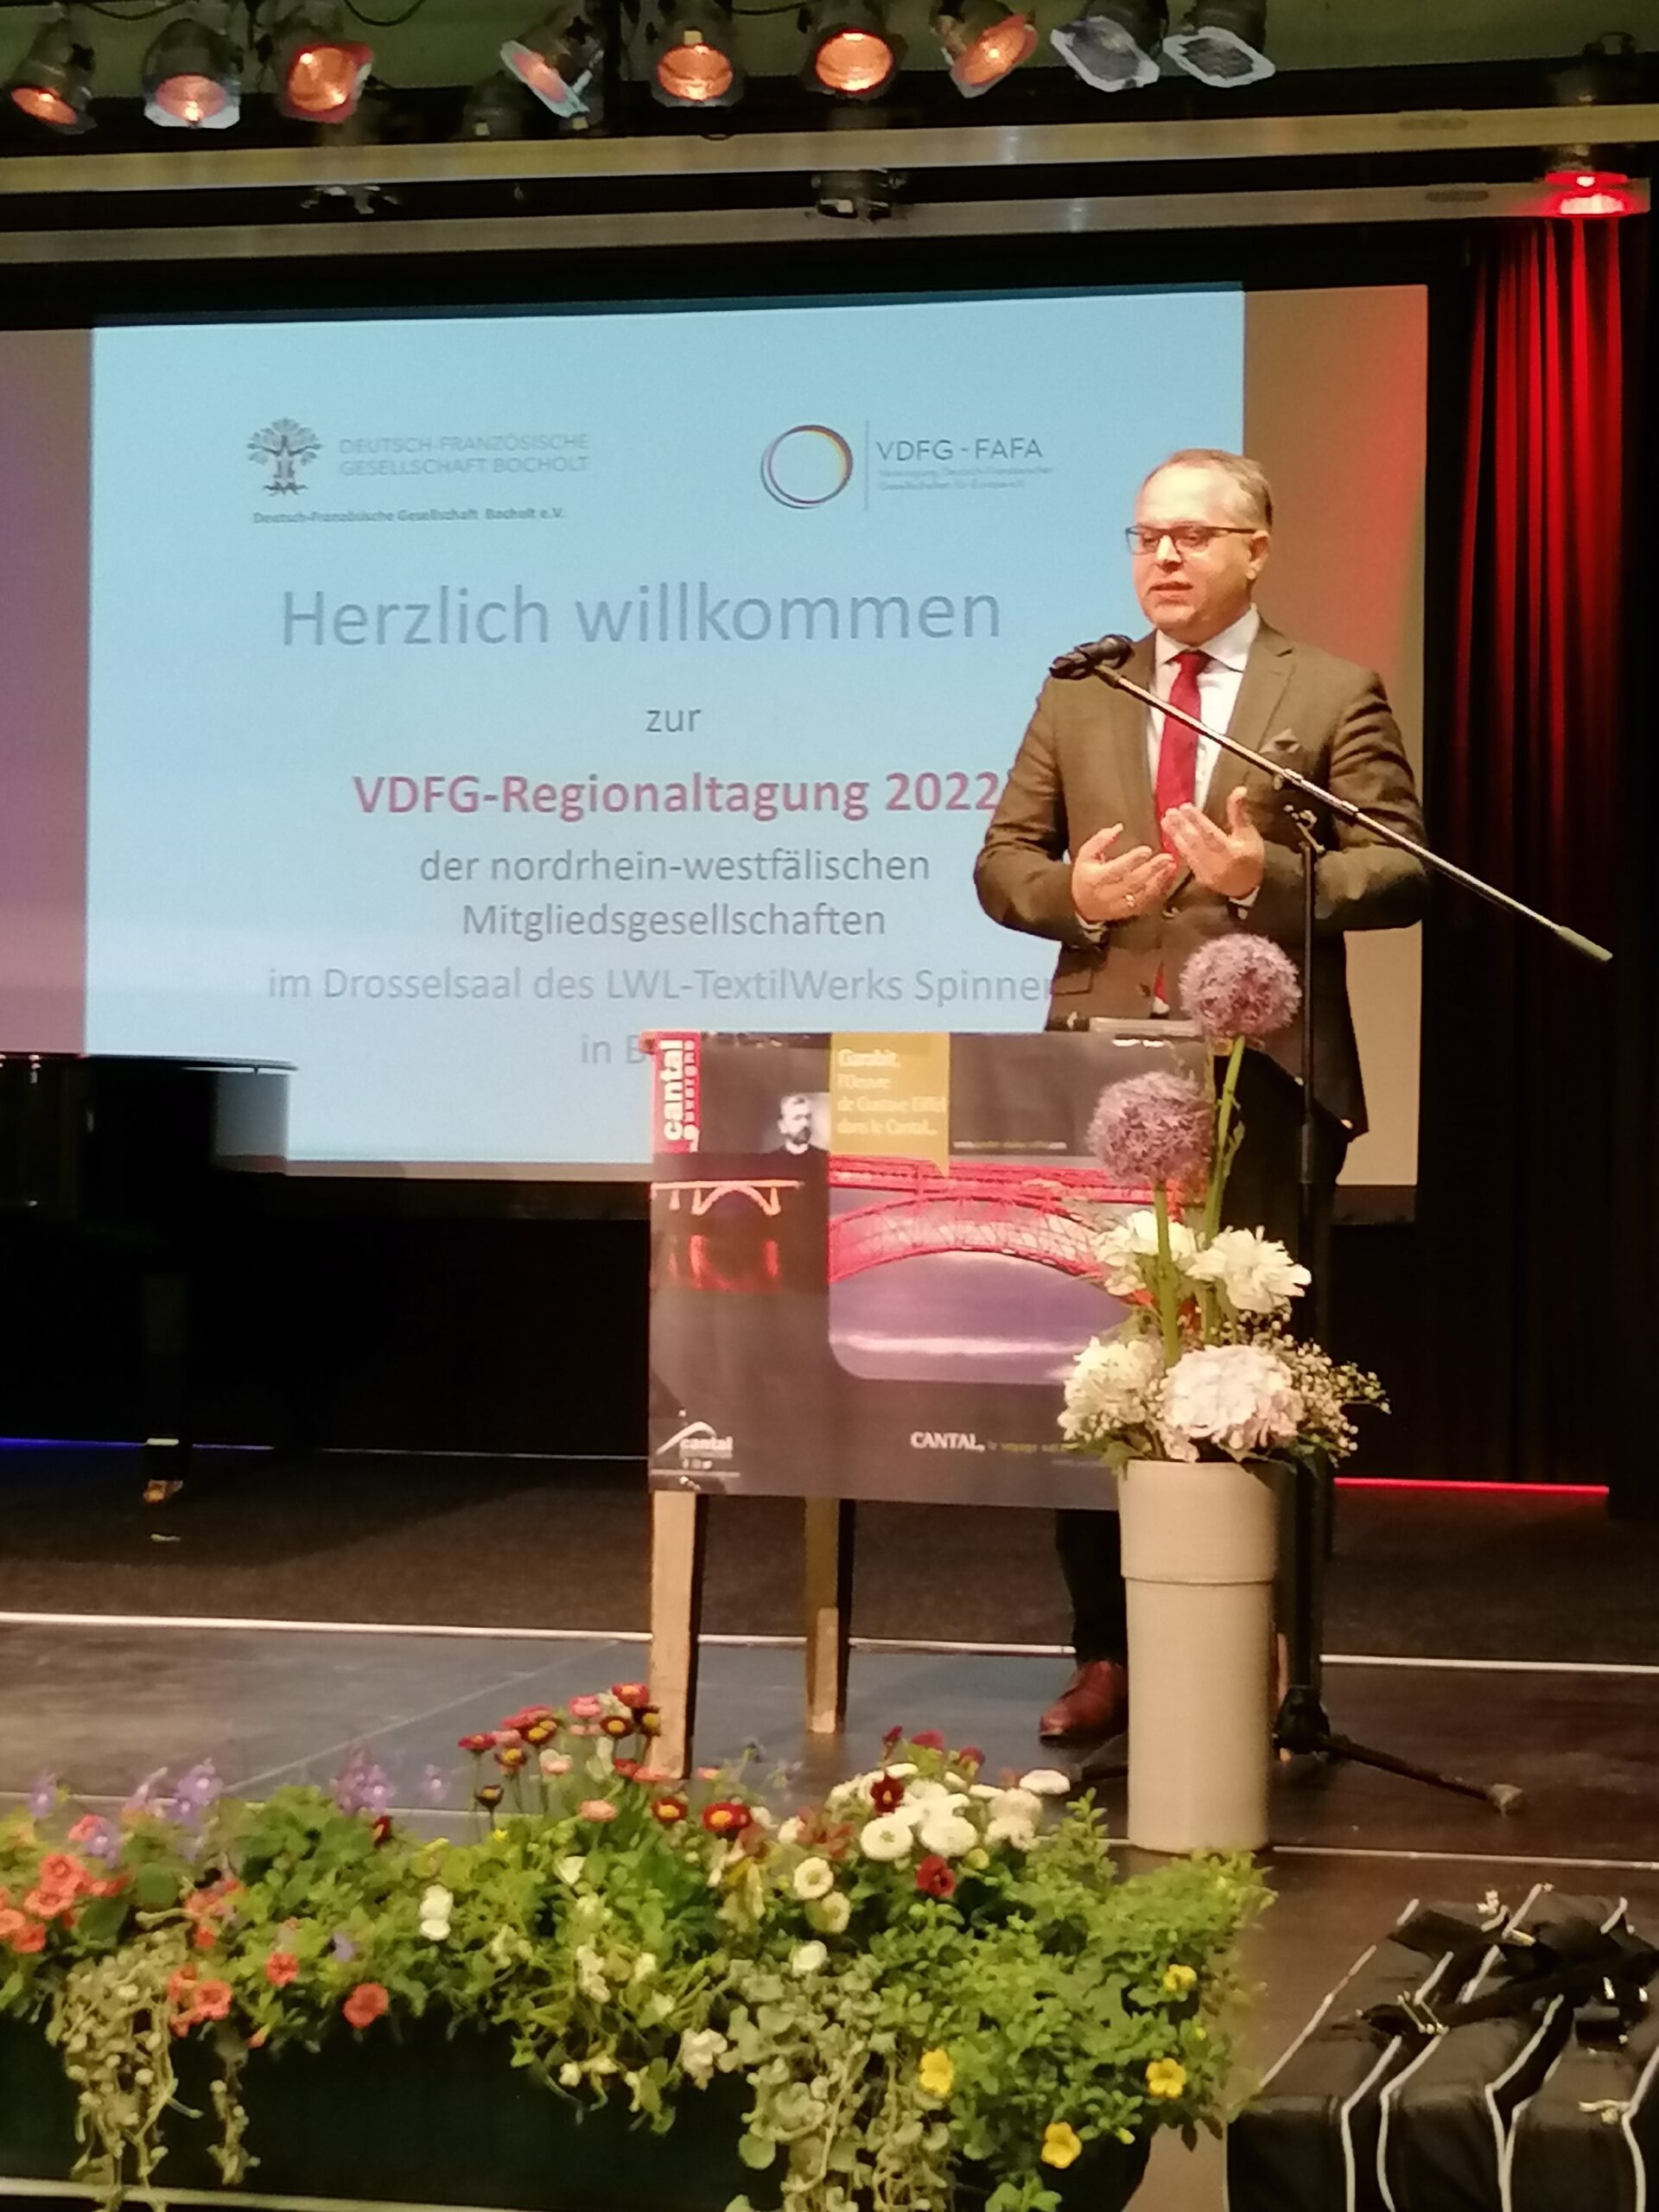 Bericht zur VDFG-Regionaltagung 2022